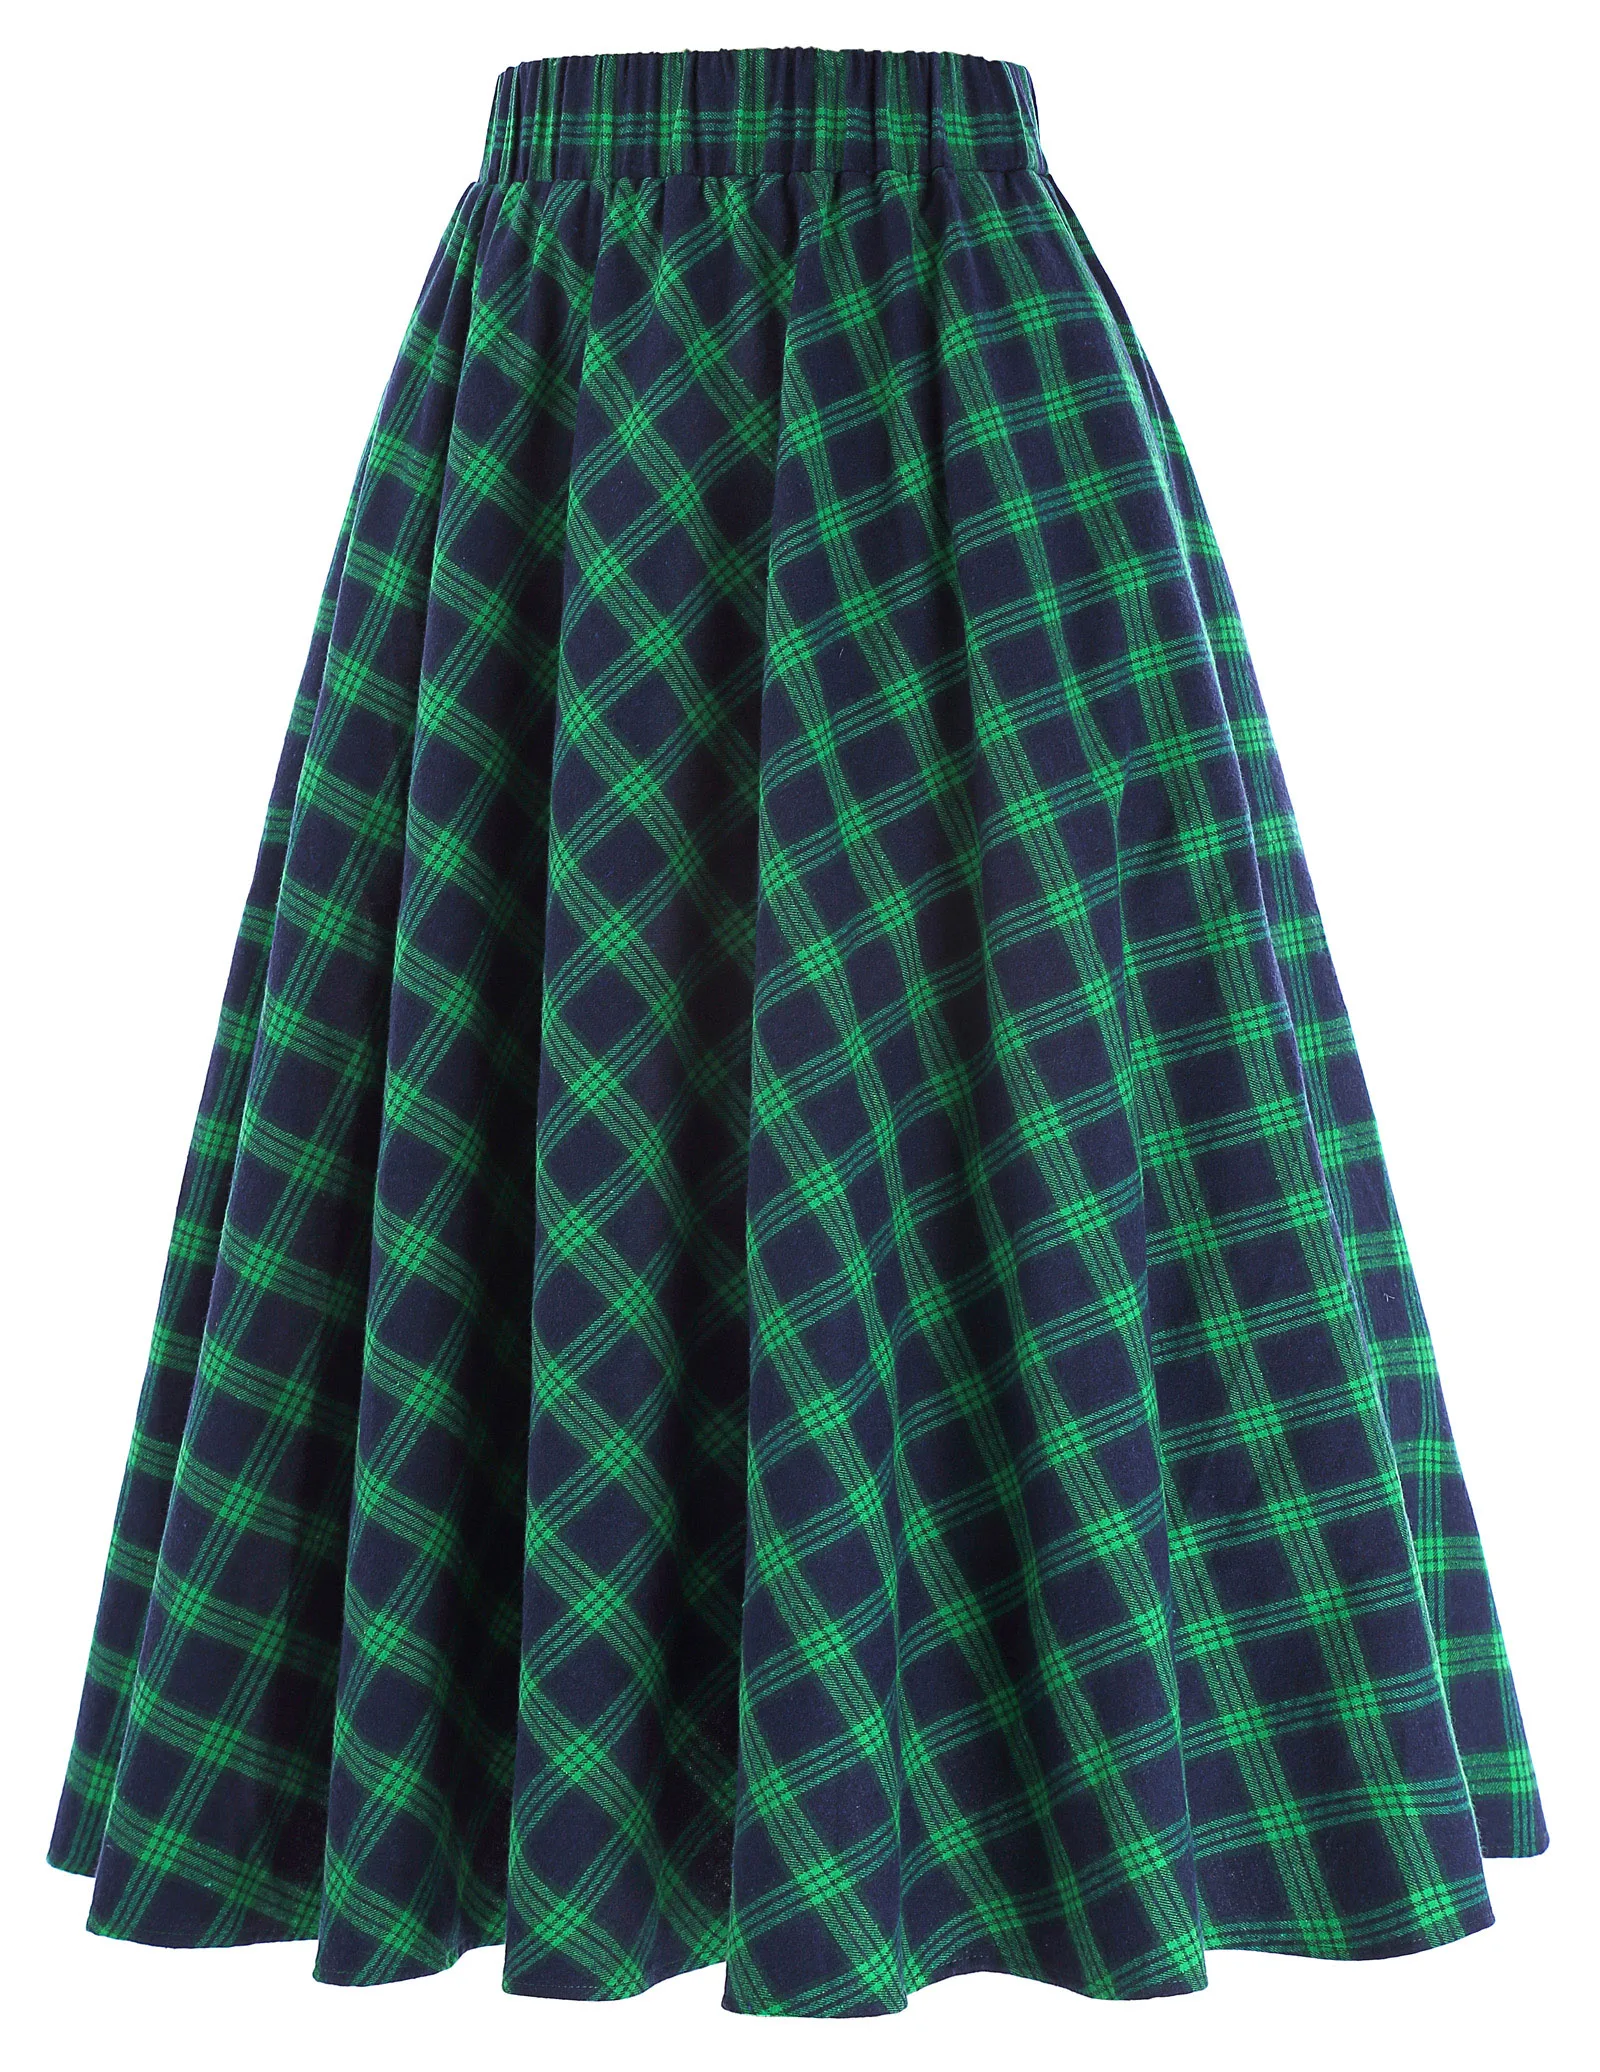 Женская юбка миди, винтажная клетчатая, консервативный стиль, для студентов, с поясом, на молнии сбоку, дизайн, плиссированная, повседневная, уличная, Ретро стиль, женские юбки